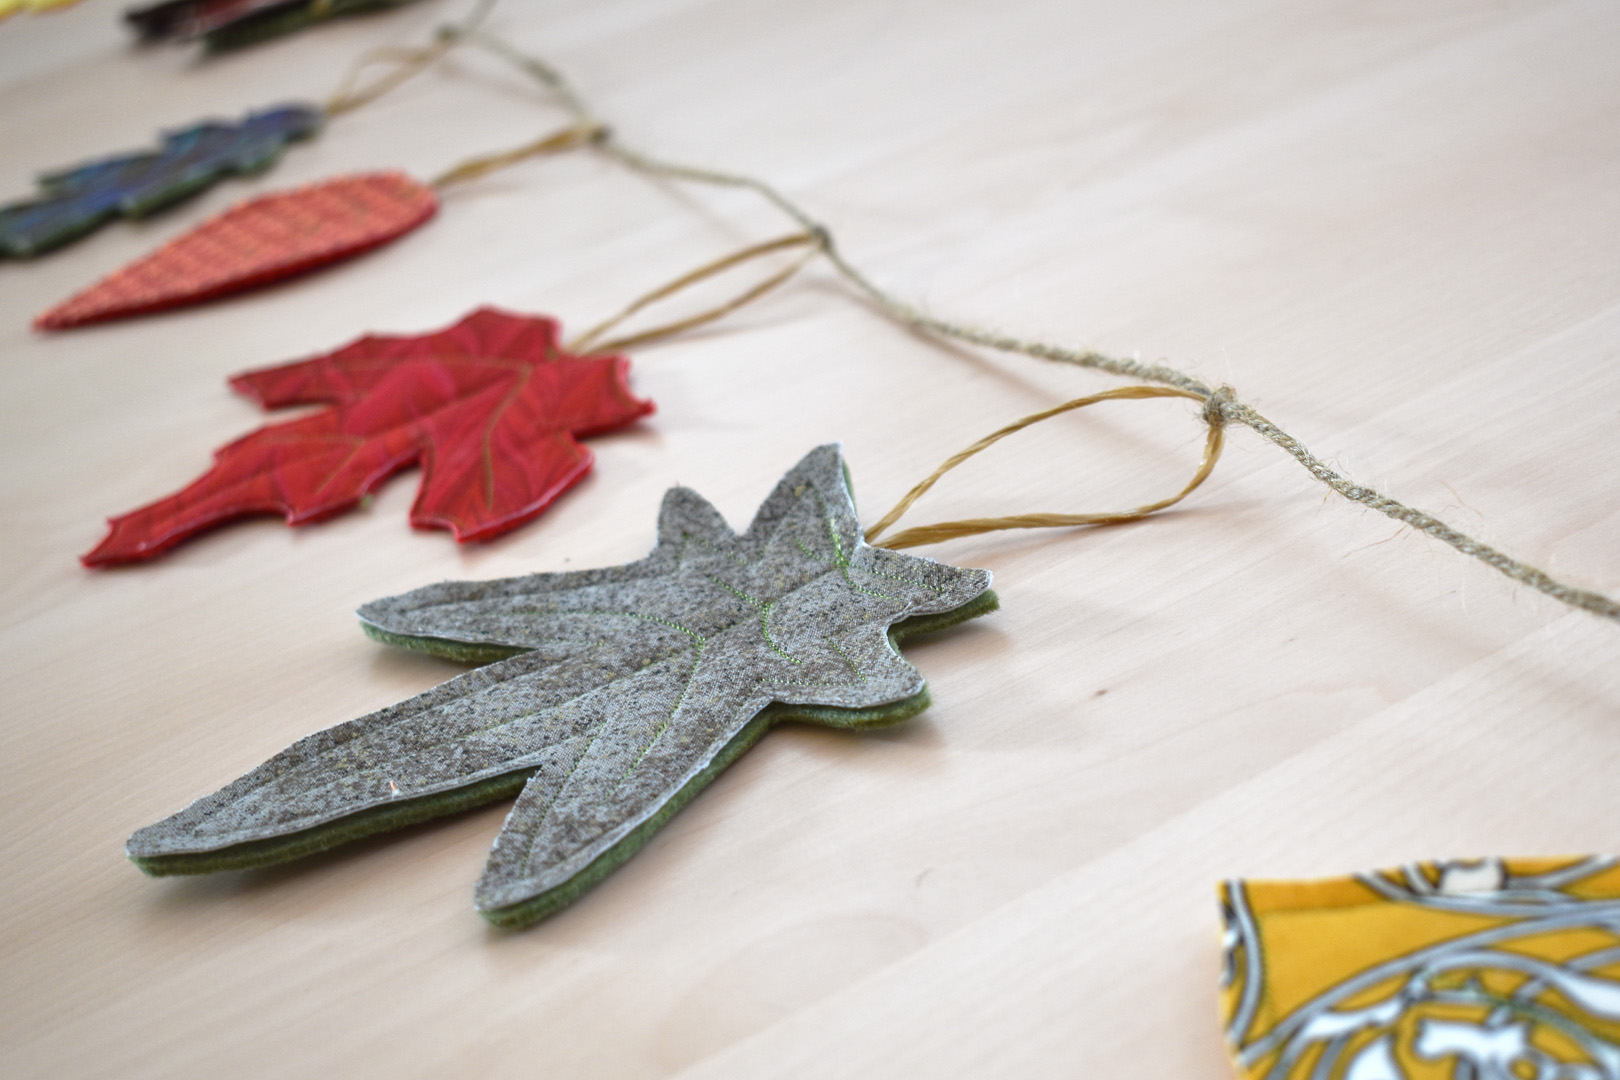 DIY Fall Leaf Decor by Erika Mulvenna